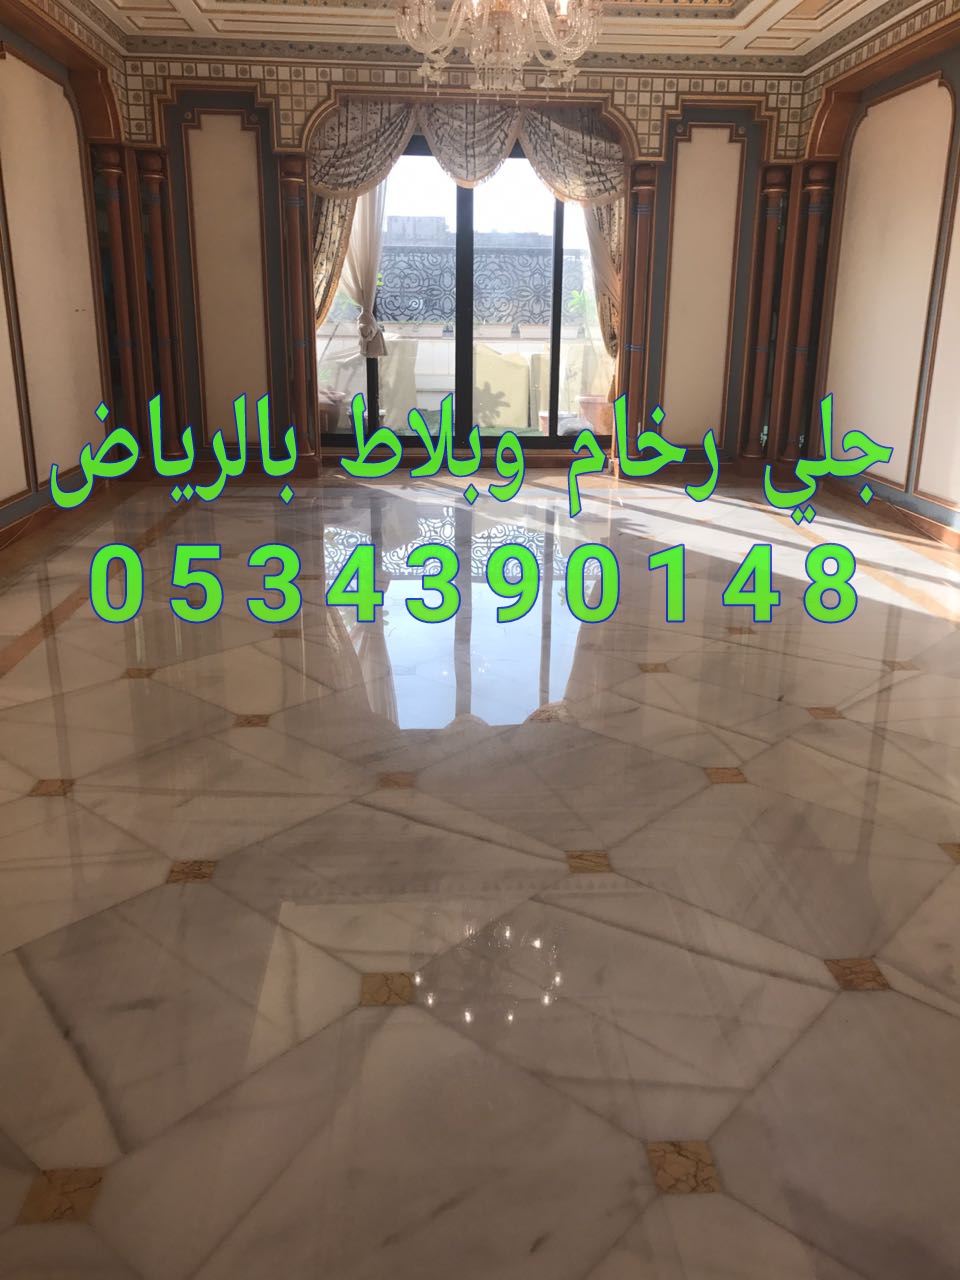 جلي رخام في الرياض من شركة الجوهرة 0534390148 اسعار ممتازة لجلي الرخام في الرياض، P_11486wjlw0